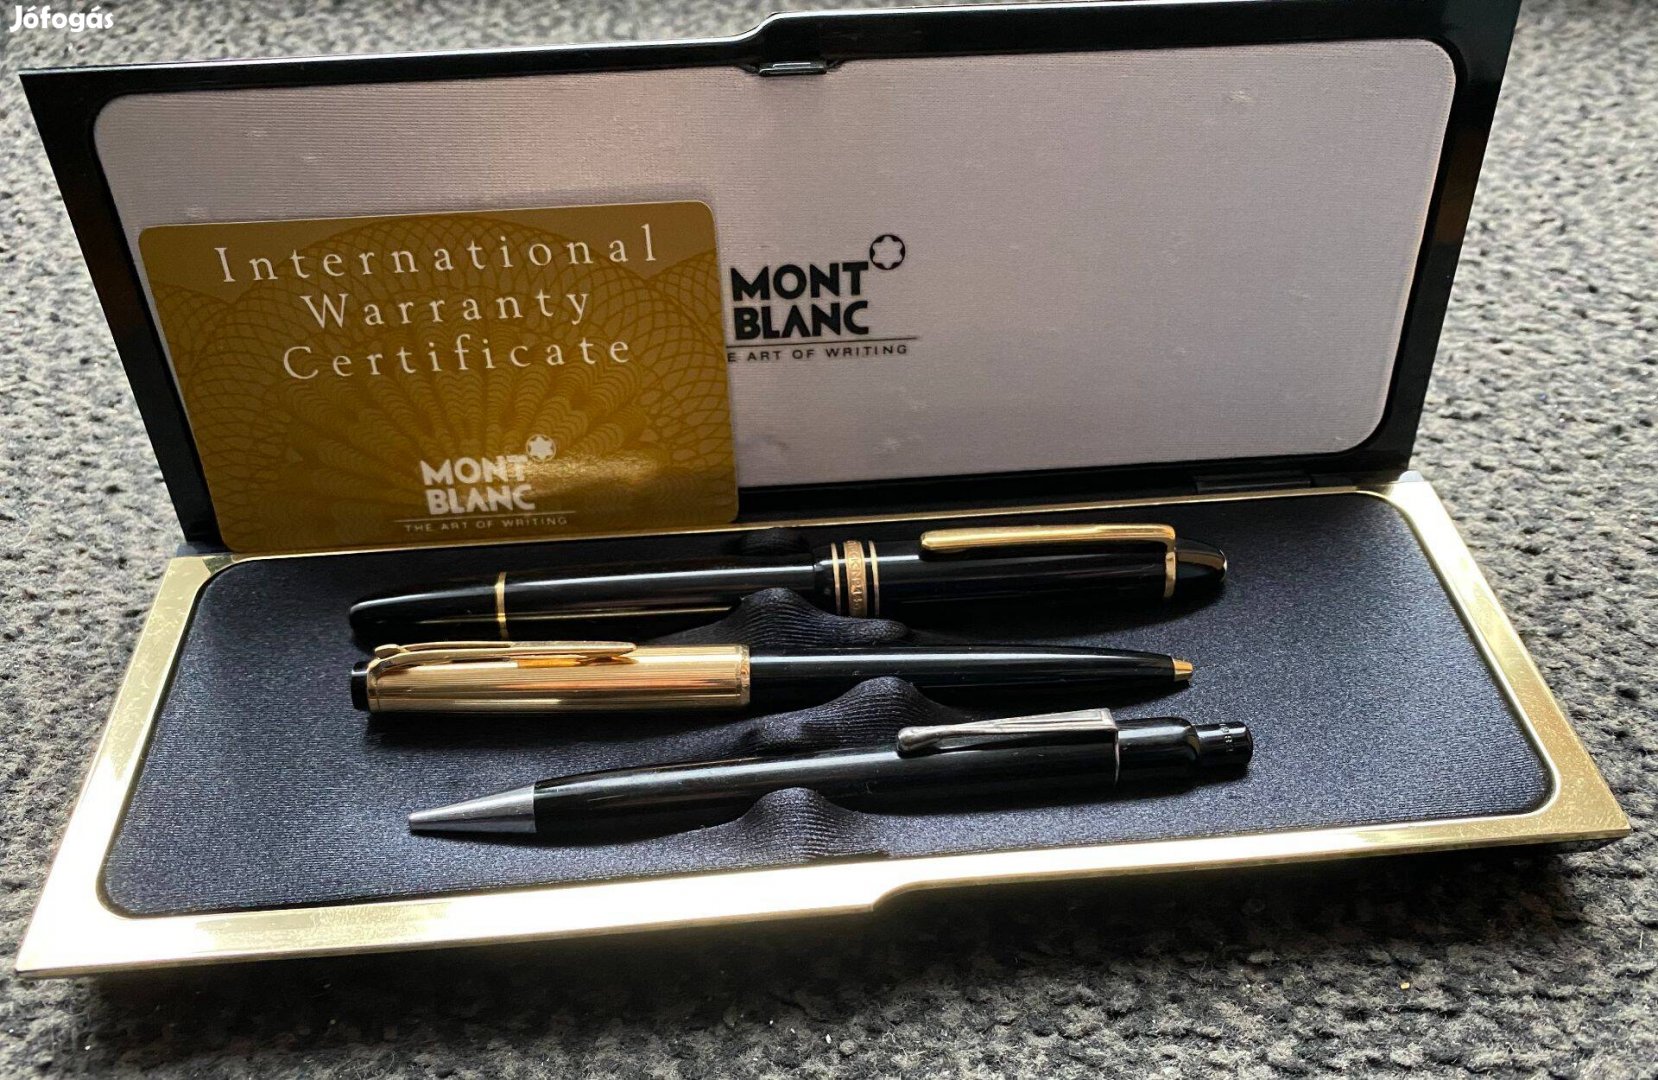 2 db MONT Blanc toll készlet + tinta (certifikáttal)